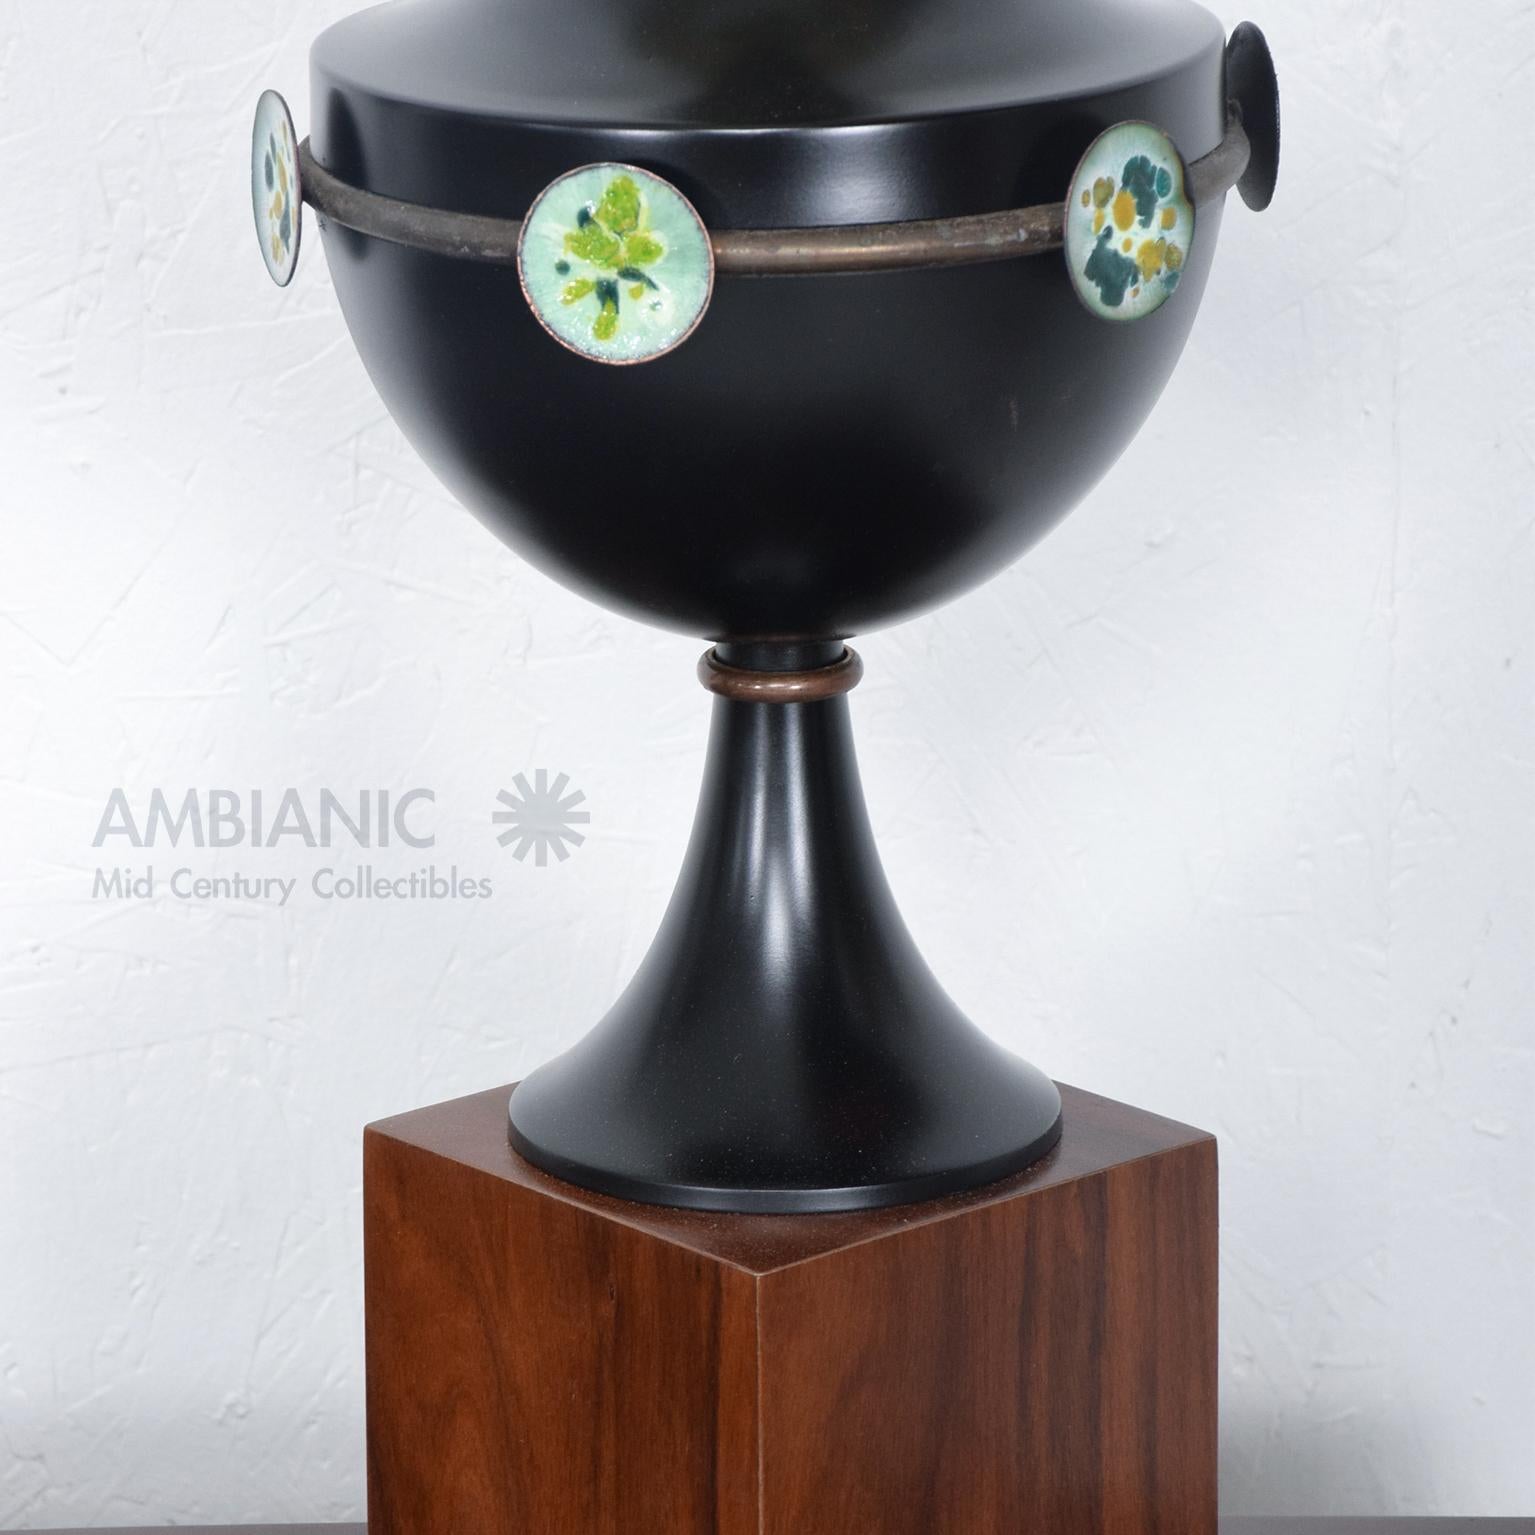 Modernisme mexicain Fabuleuse lampe de table sculpturale. Aluminium peint en noir. Raccords et quincaillerie en bronze patiné.
La lampe comporte des disques émaillés colorés.  La lampe est montée sur une base surélevée en noyer et